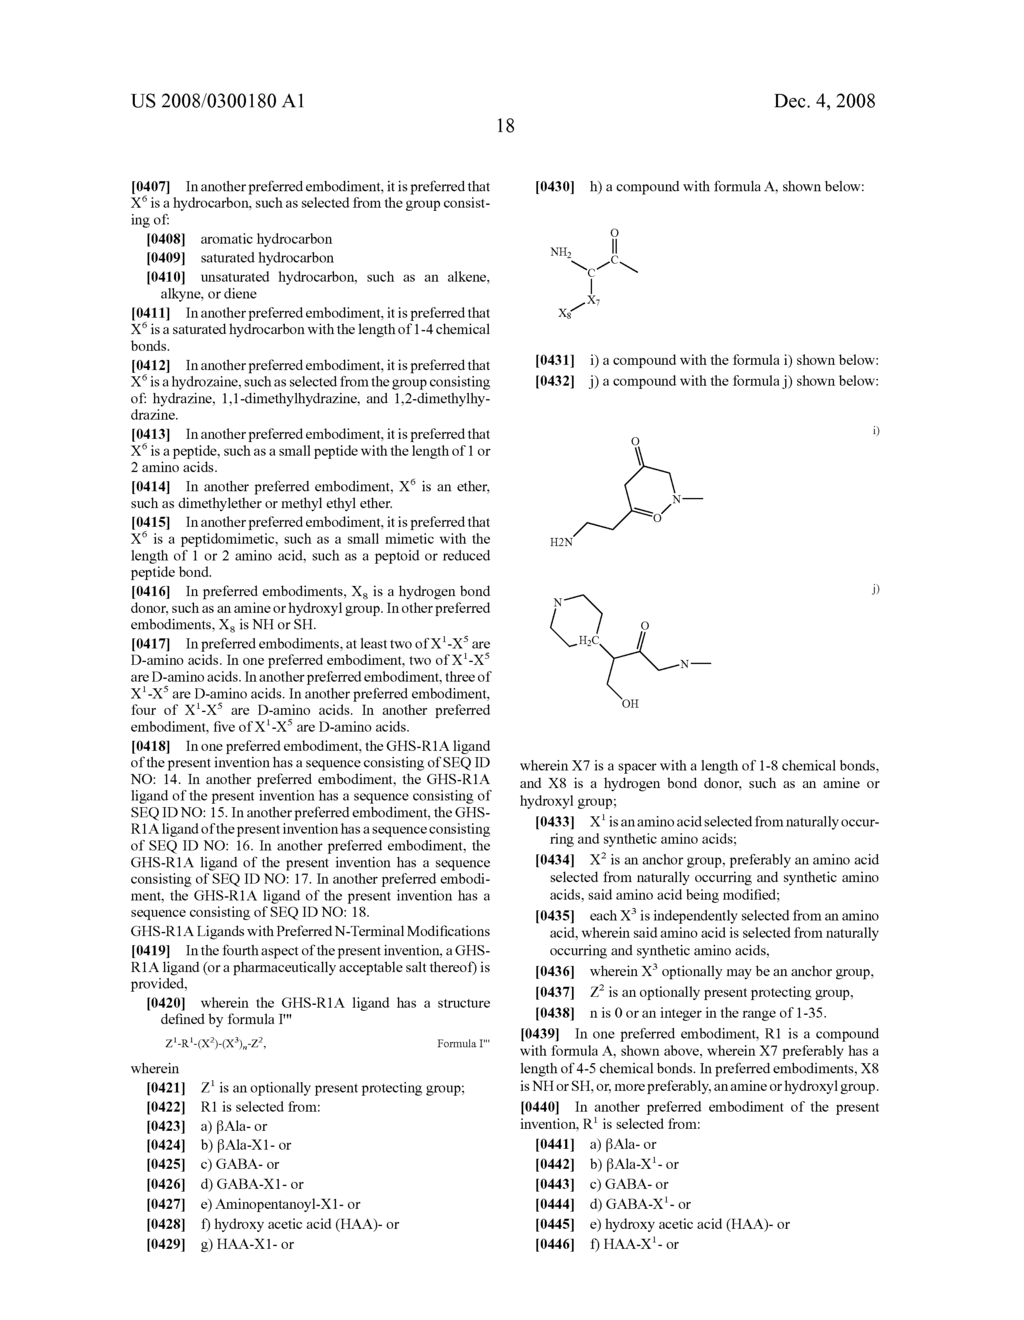 Growth Hormone Secretagogue Receptor 1A Ligands - diagram, schematic, and image 22